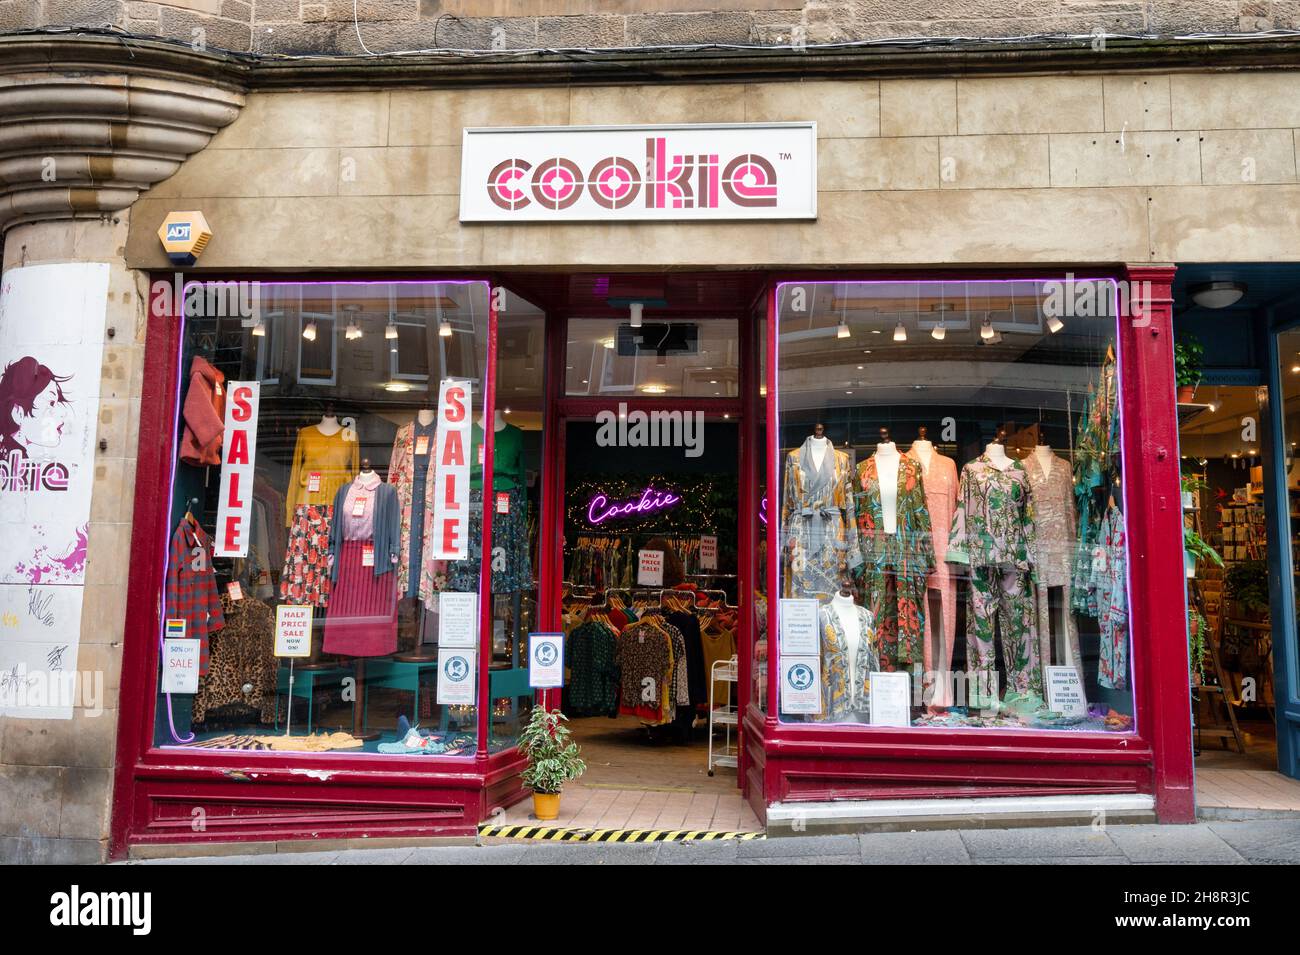 Édimbourg, Écosse - 20 novembre 2021 : l'avant du magasin de vêtements cookie à Édimbourg. Banque D'Images